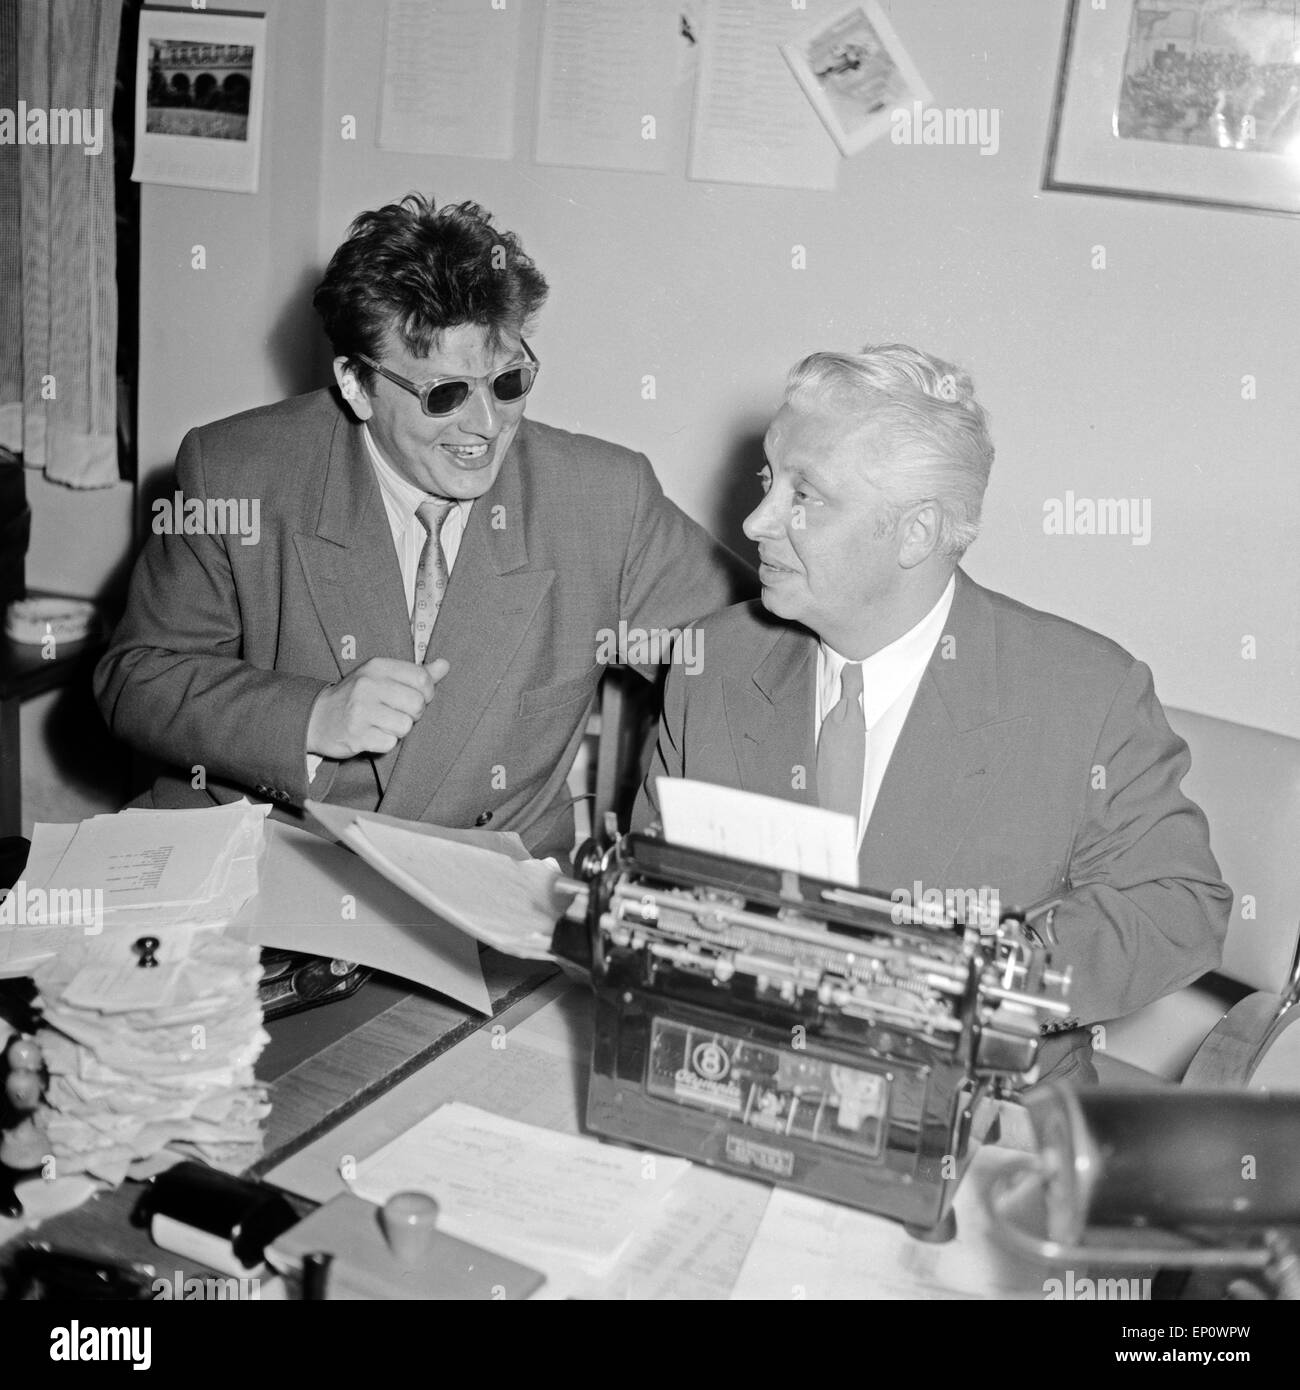 Zwei Männer am Schreibtisch in einem Büro des NDR di Amburgo, einer mit zeitgenössischer Frisur und Sonnenbrille, Der andere un Foto Stock